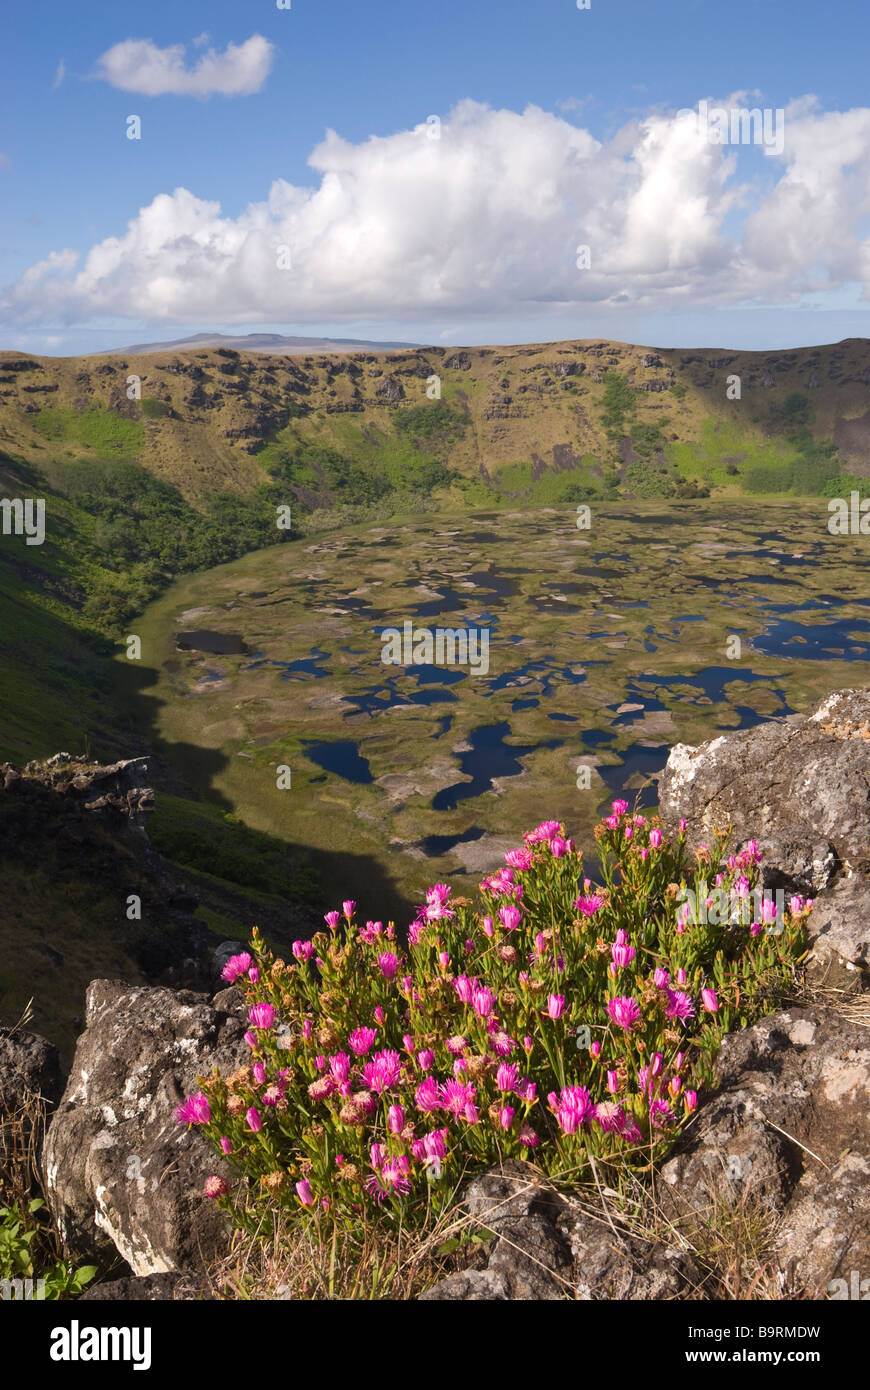 Elk198 5123v Cile Isola di Pasqua Rapa Nui Ranu Kau crater e il lago Foto Stock